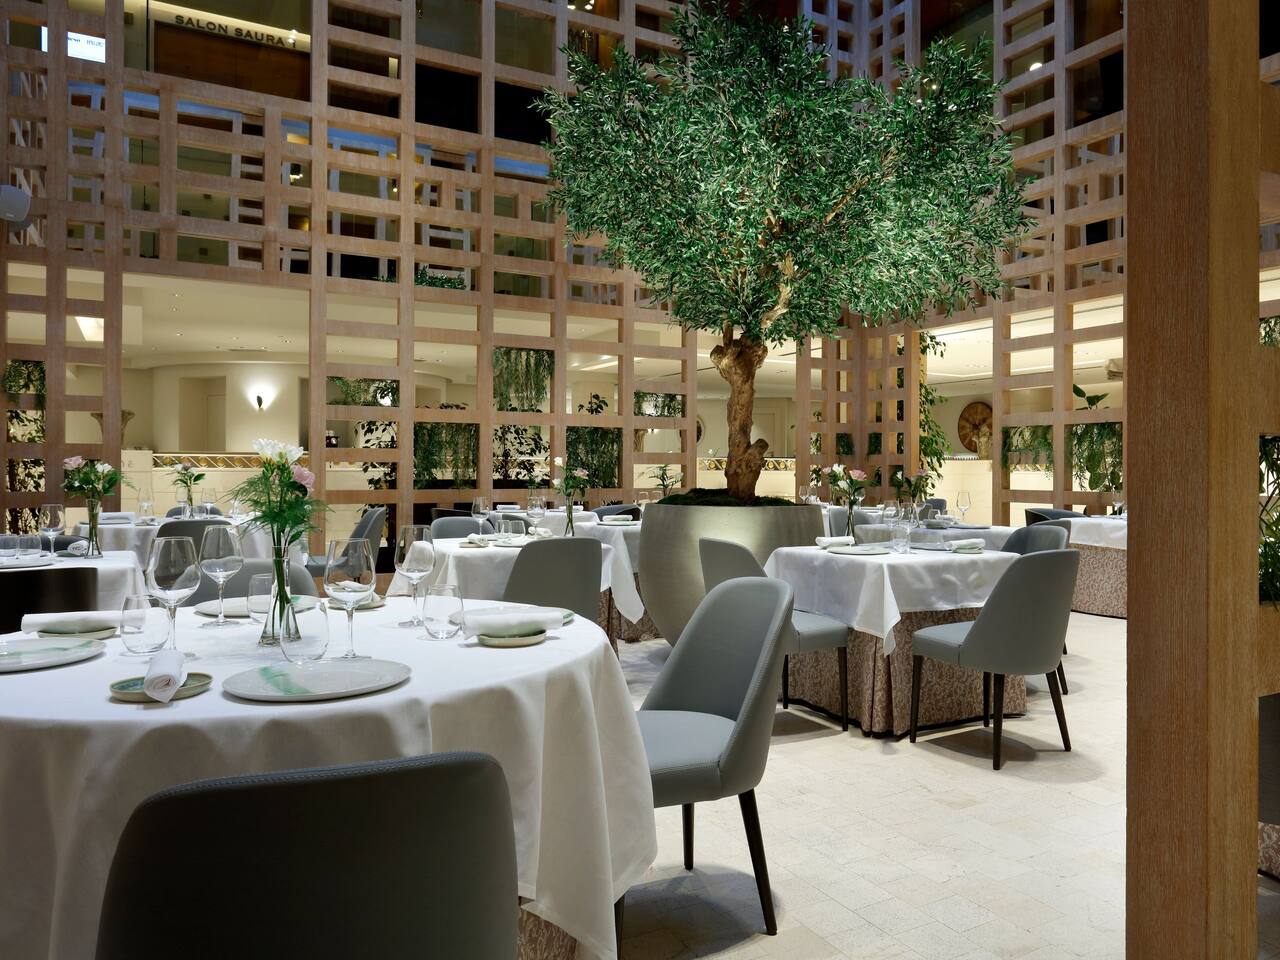 Mesas del restaurante La Manzana iluminadas por la luz natural en nuestro hotel Hyatt Regency Hesperia Madrid.